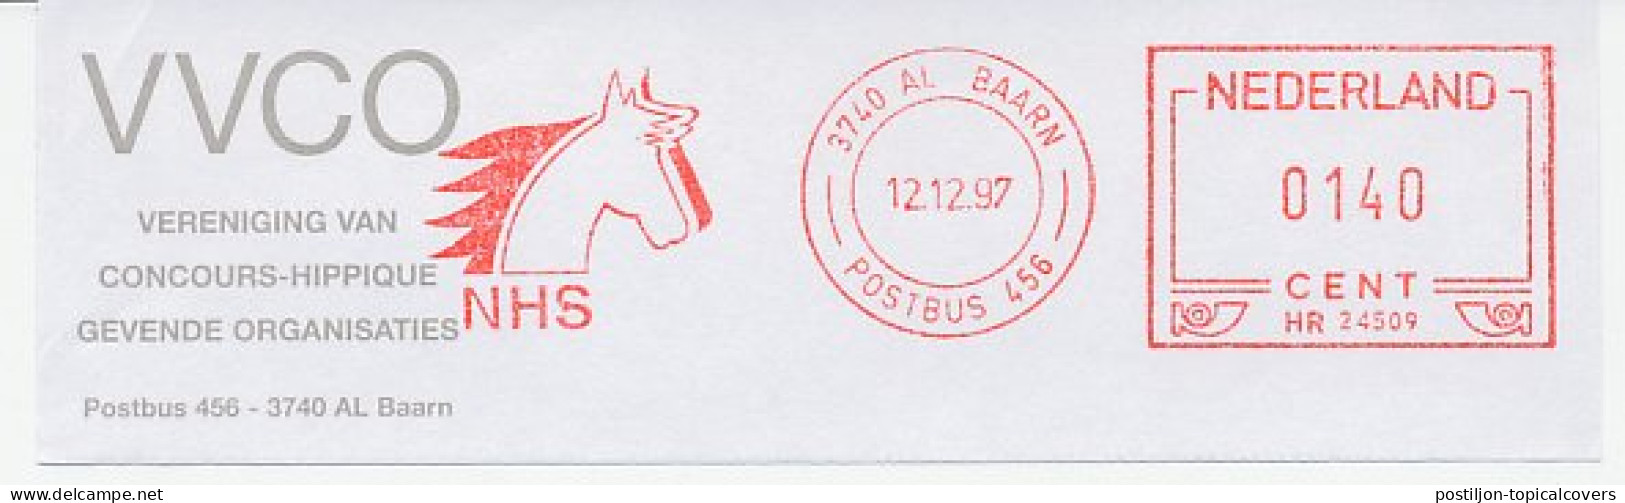 Meter Top Cut Netherlands 1997 Association Concours Hippique - Horse Show - Horses